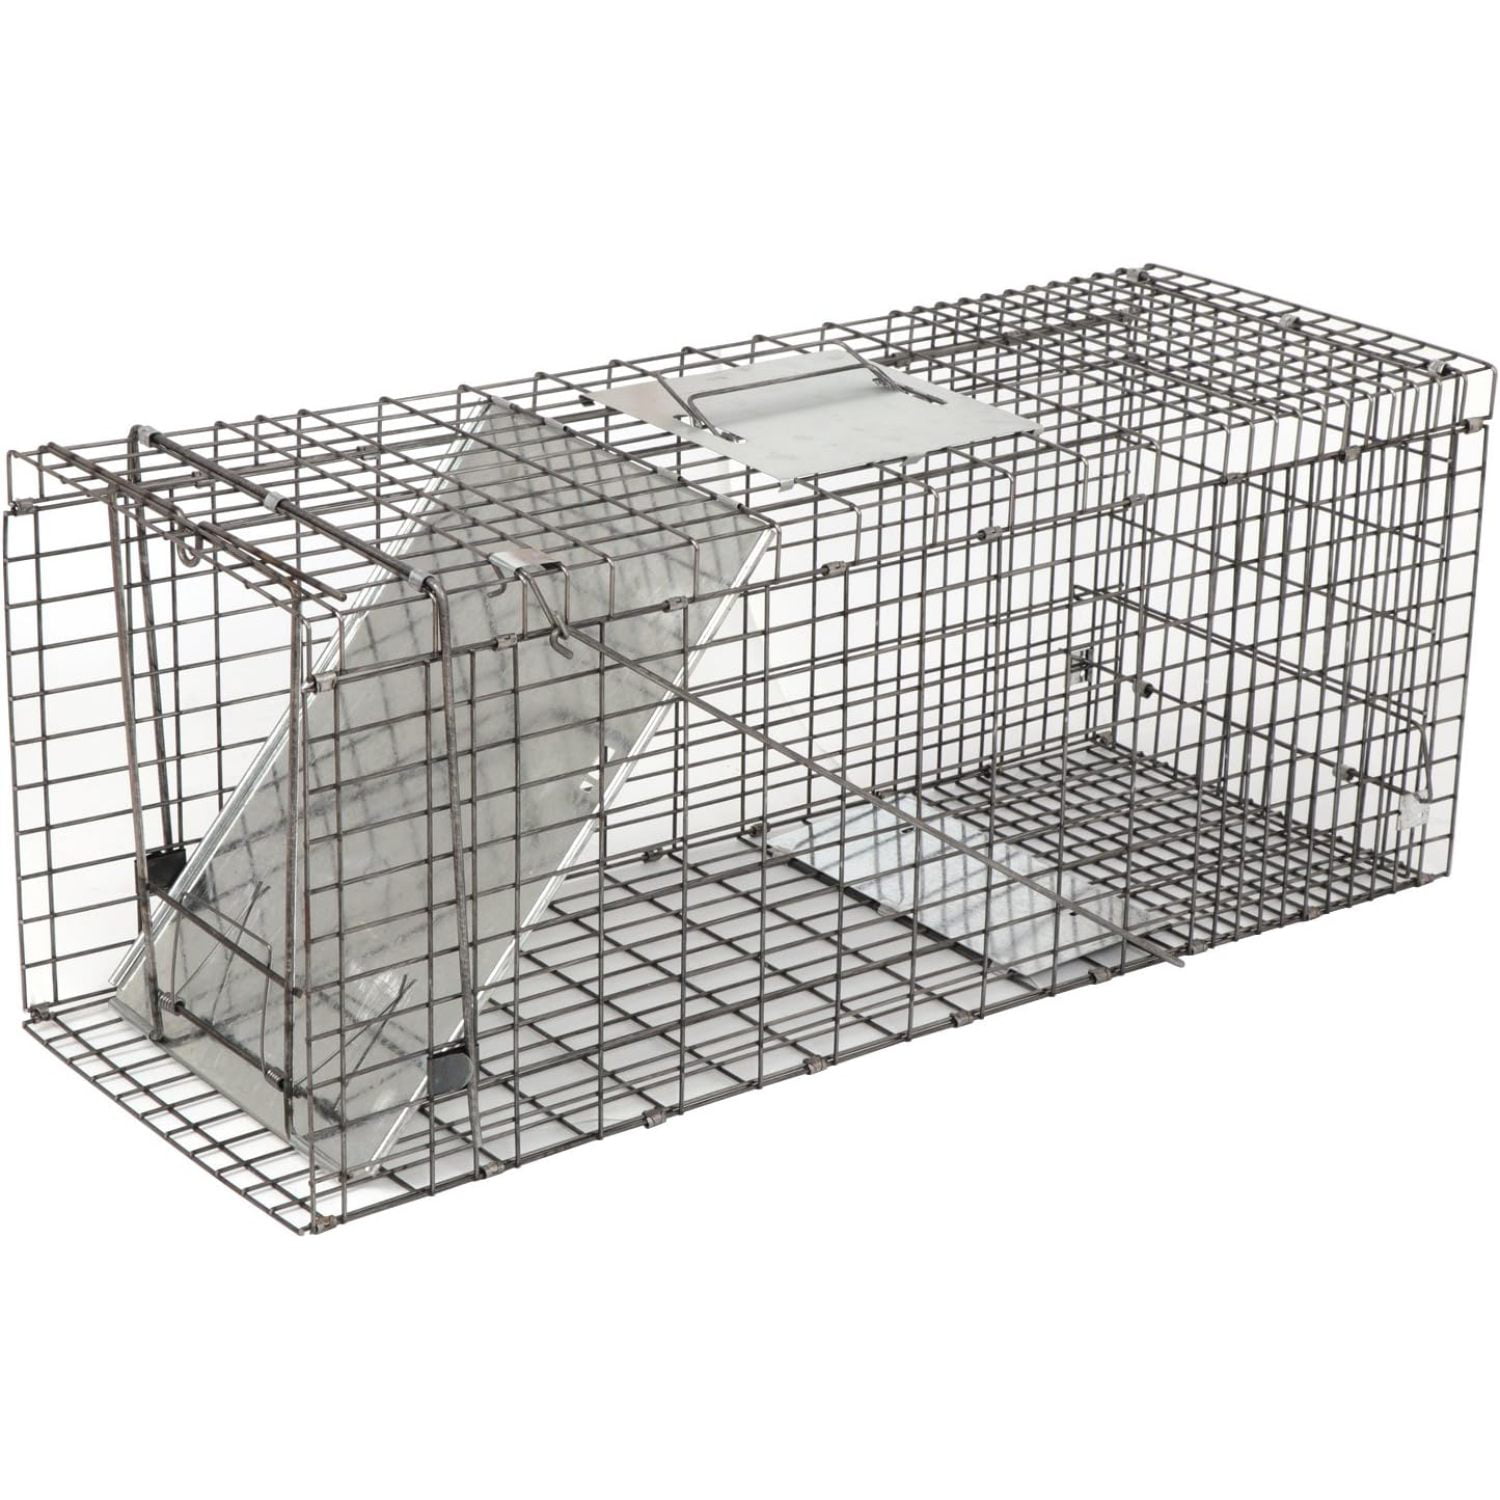 Caged animals. Клетка кошколовка ЛОВУШКА складная. Клетка ЛОВУШКА для нутрий. Клетка ЛОВУШКА для собак 3м разборная. Клетка для поимки кошек.